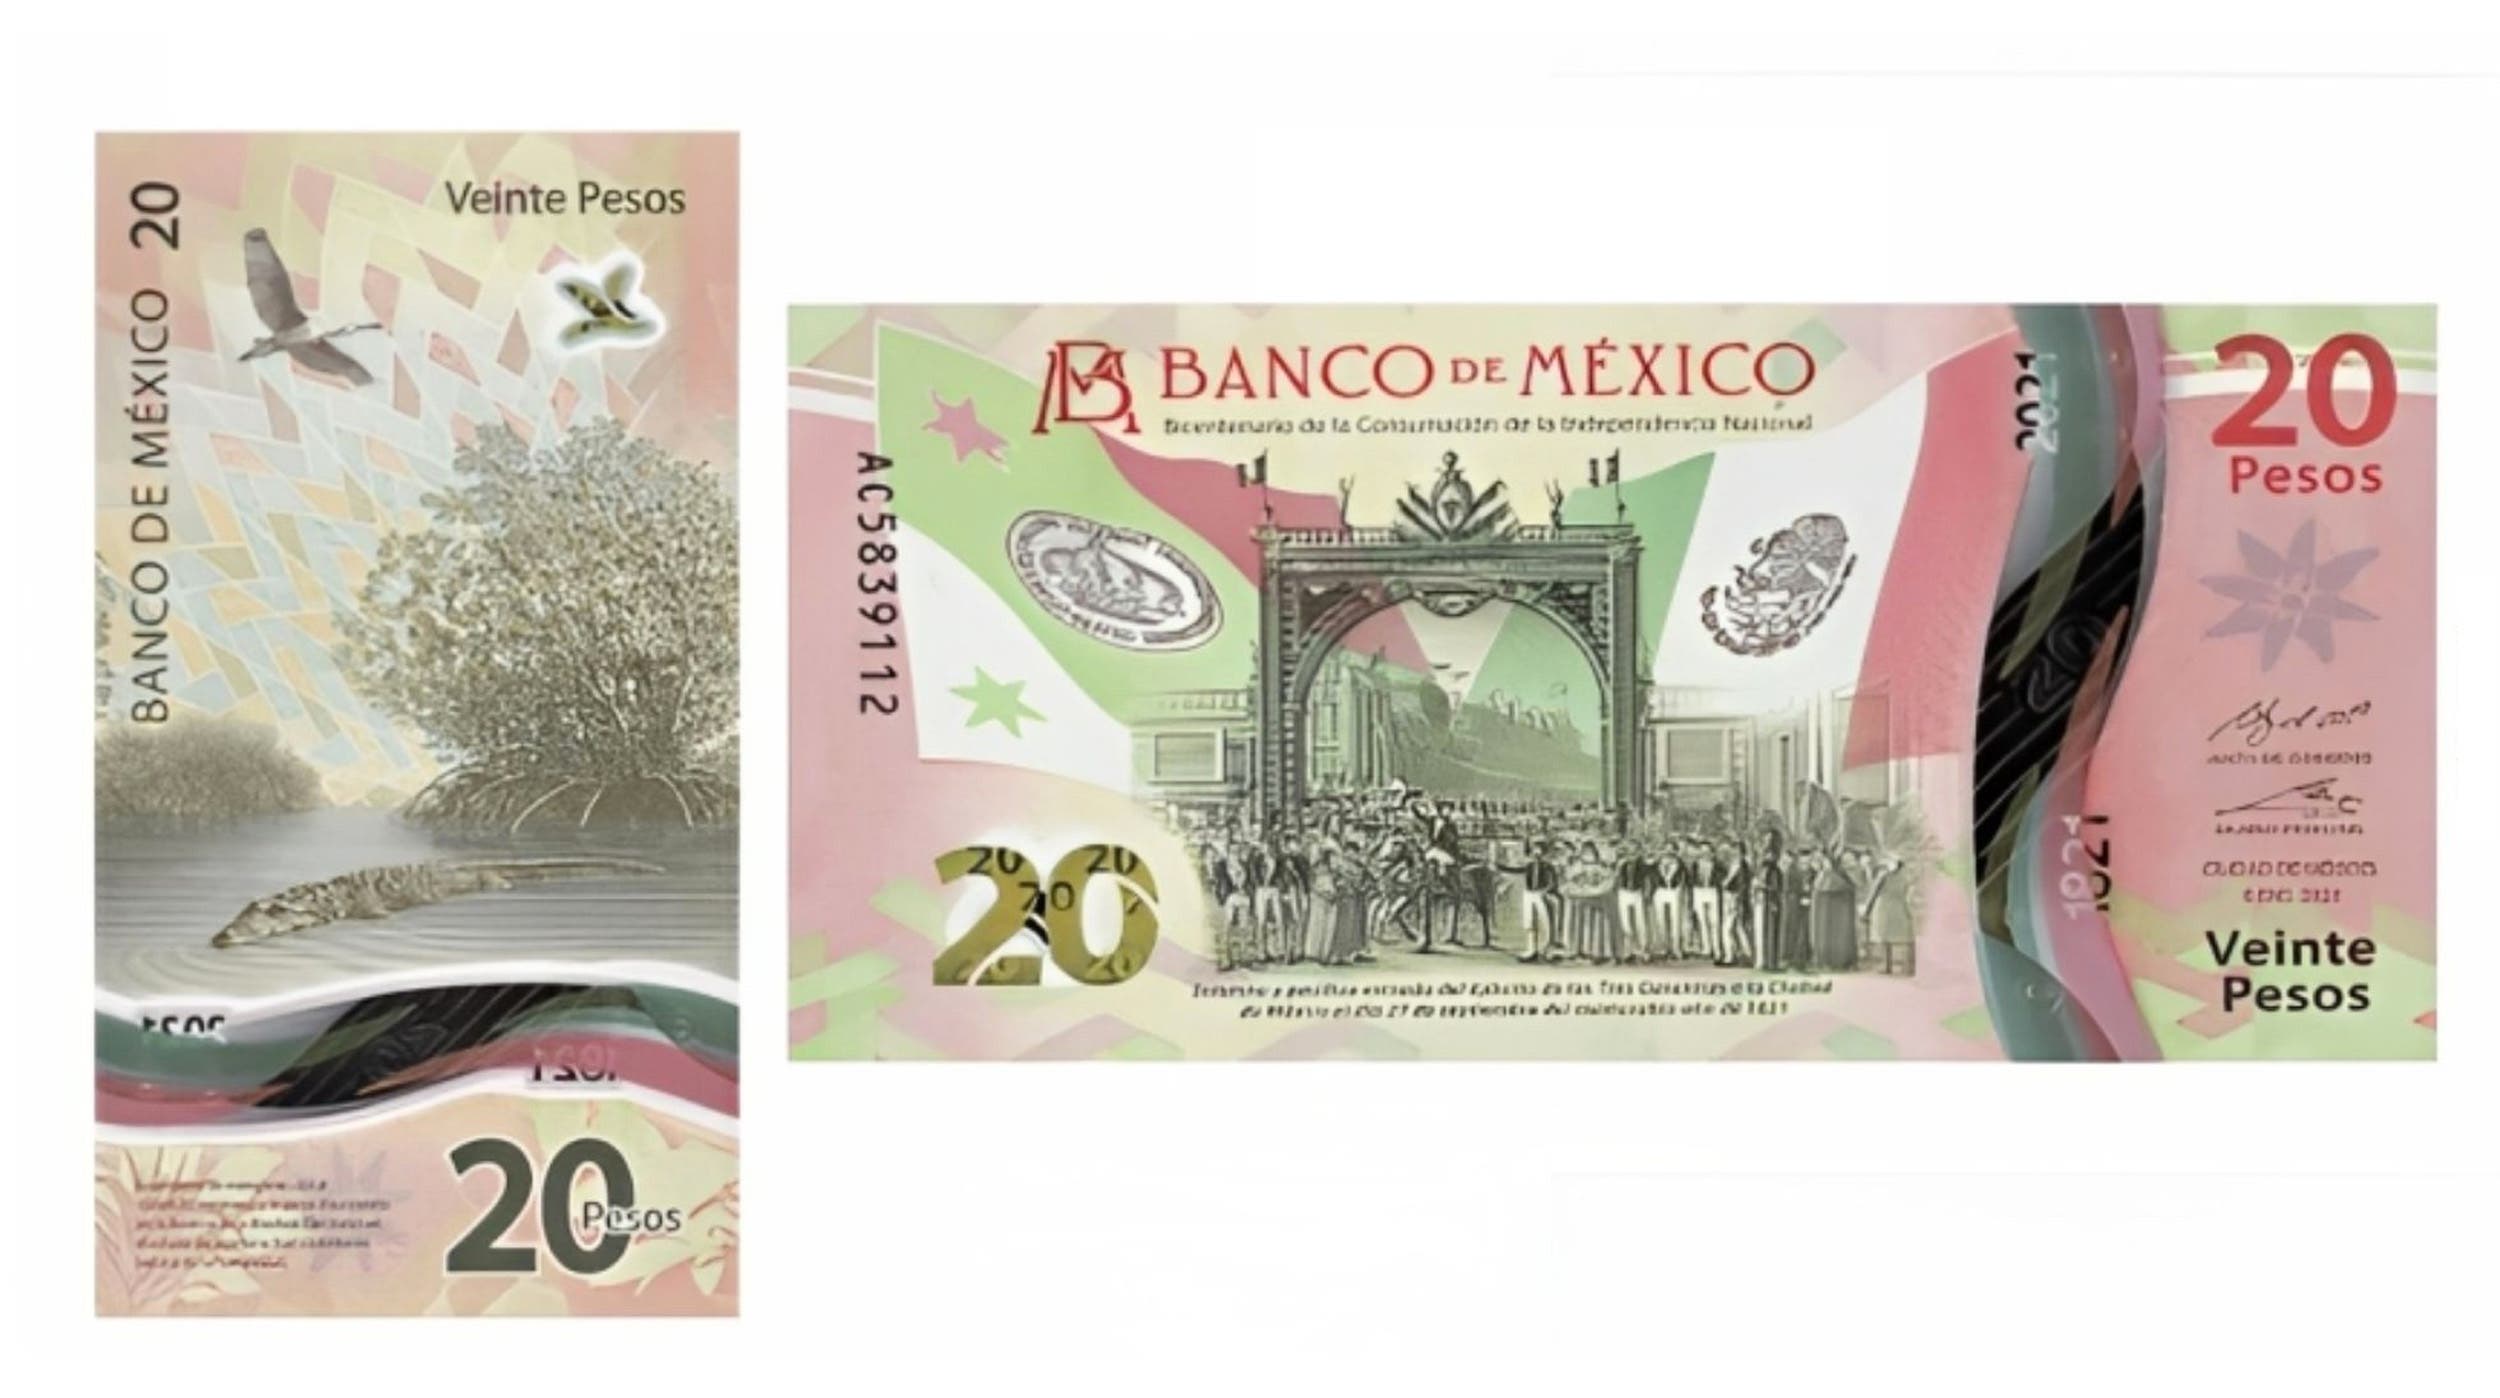 Este billete de 20 pesos vale más de $600,000